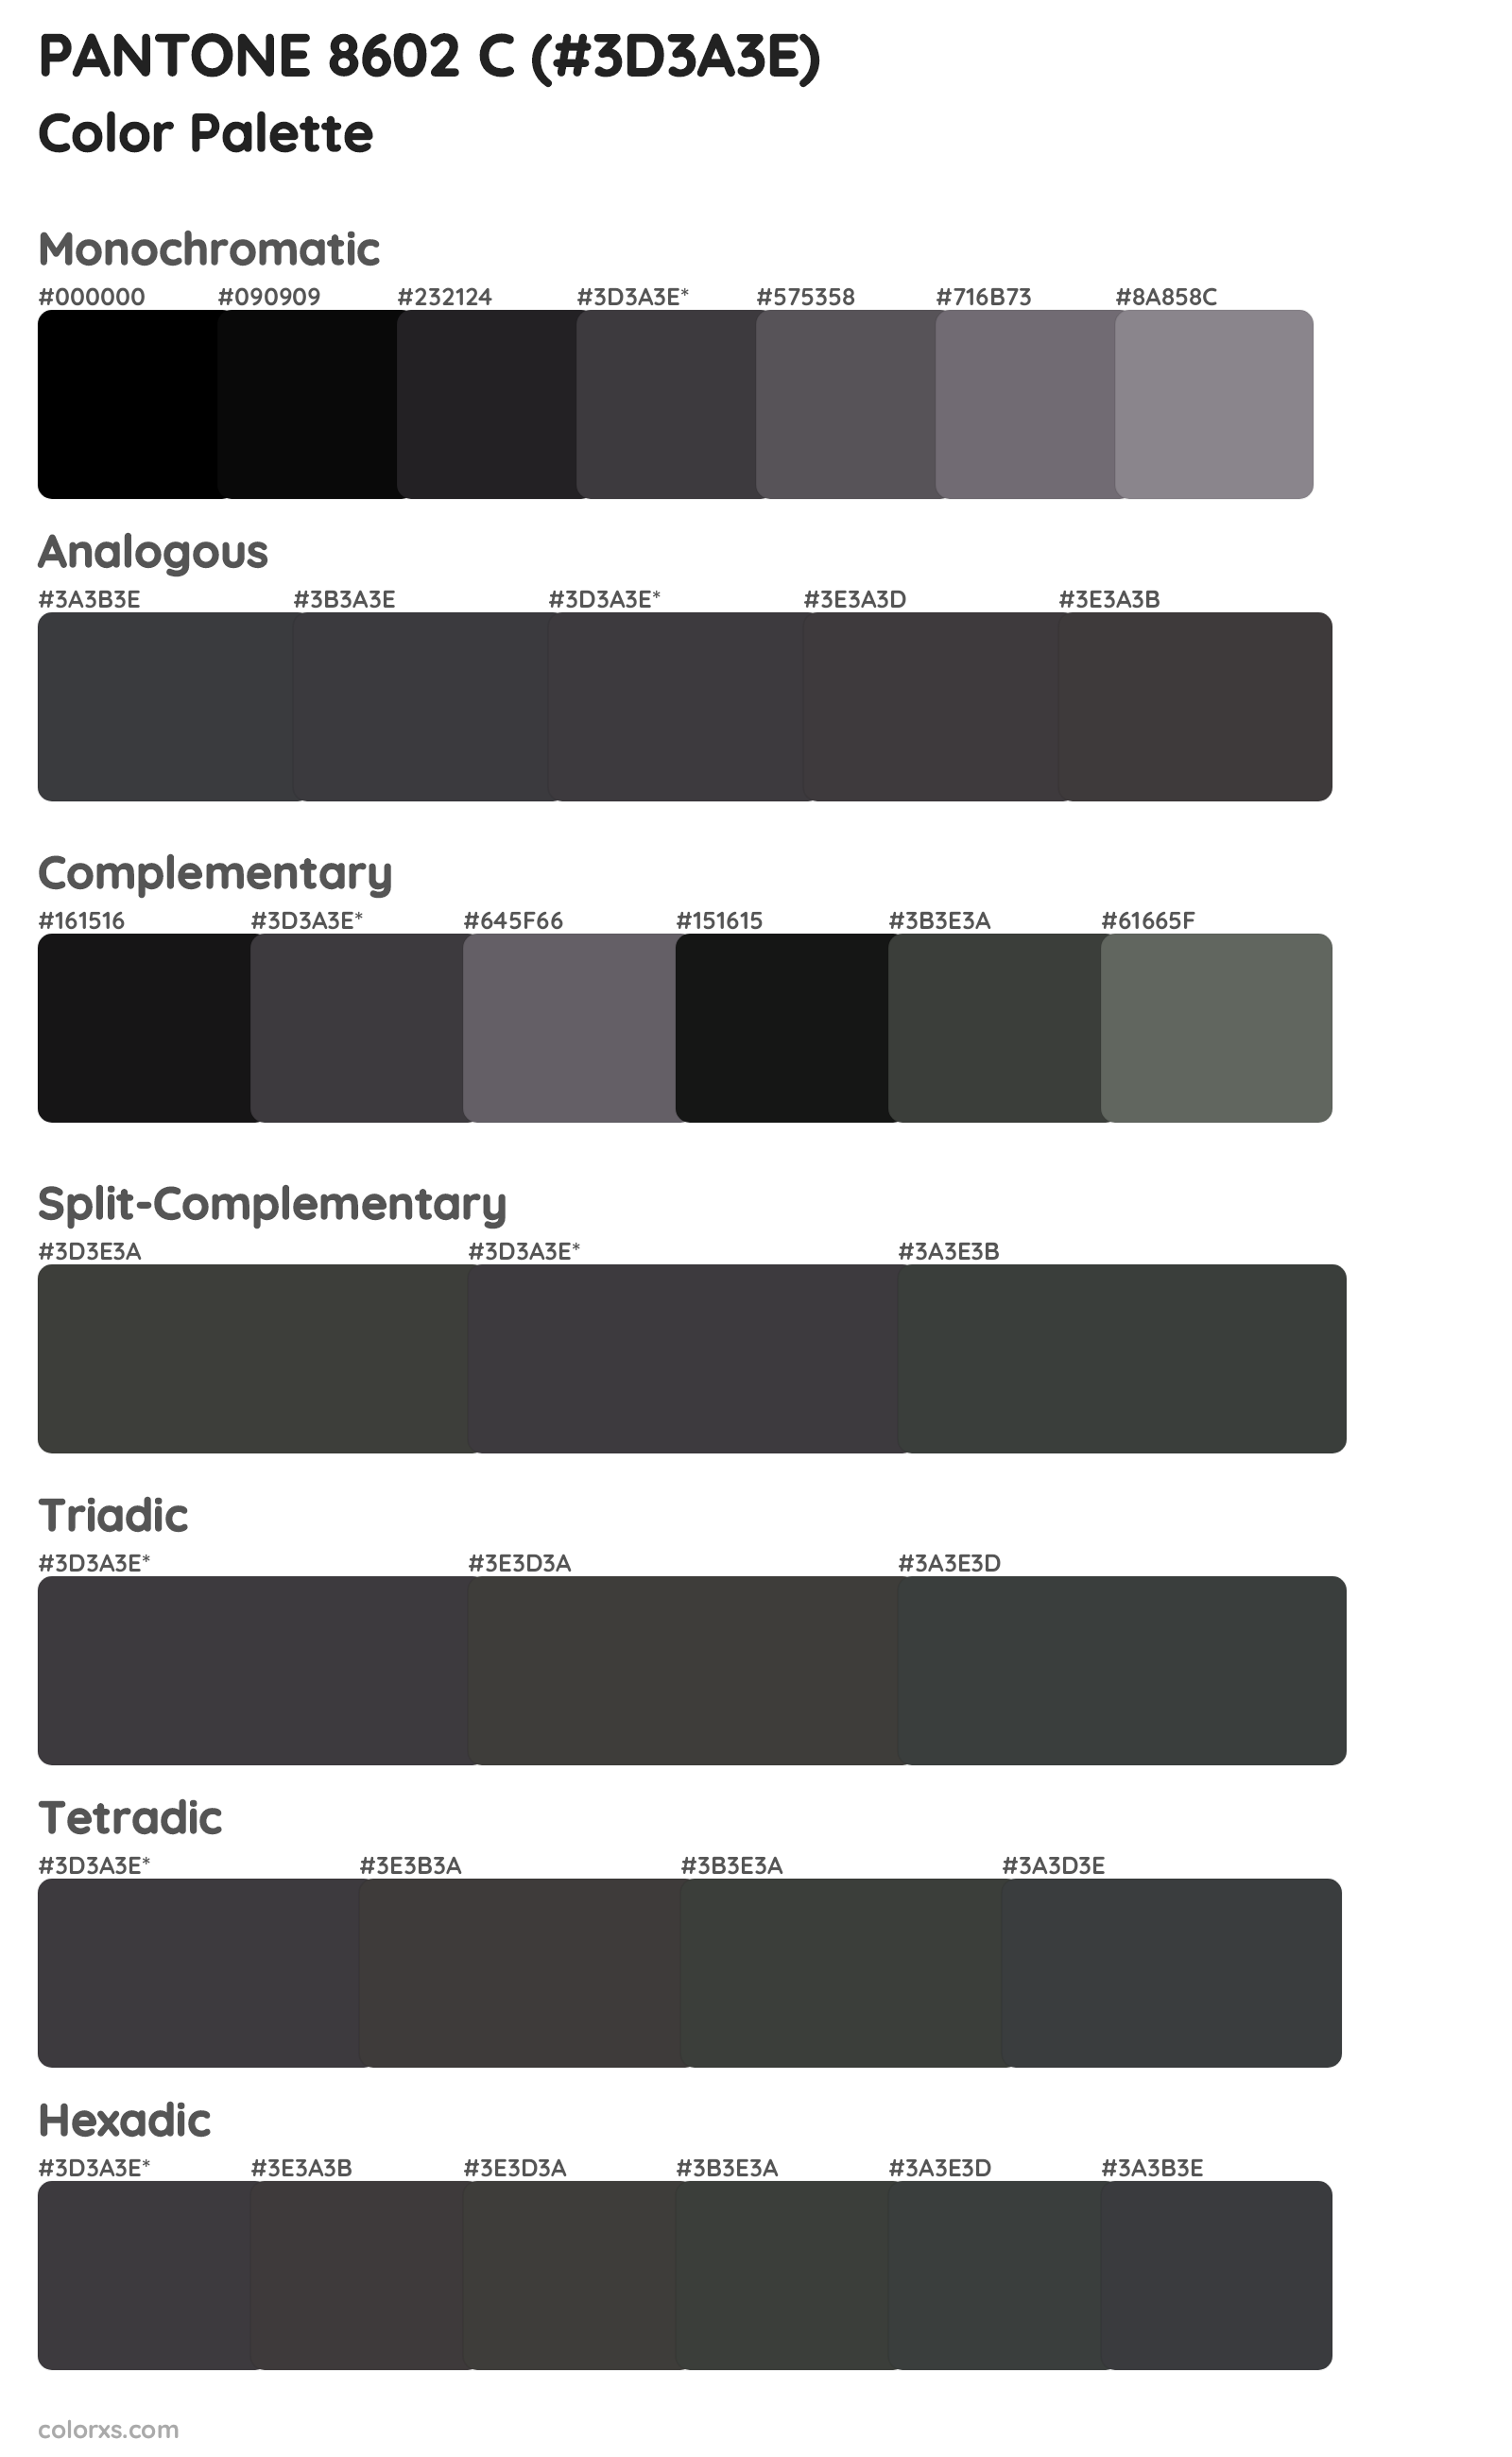 PANTONE 8602 C Color Scheme Palettes